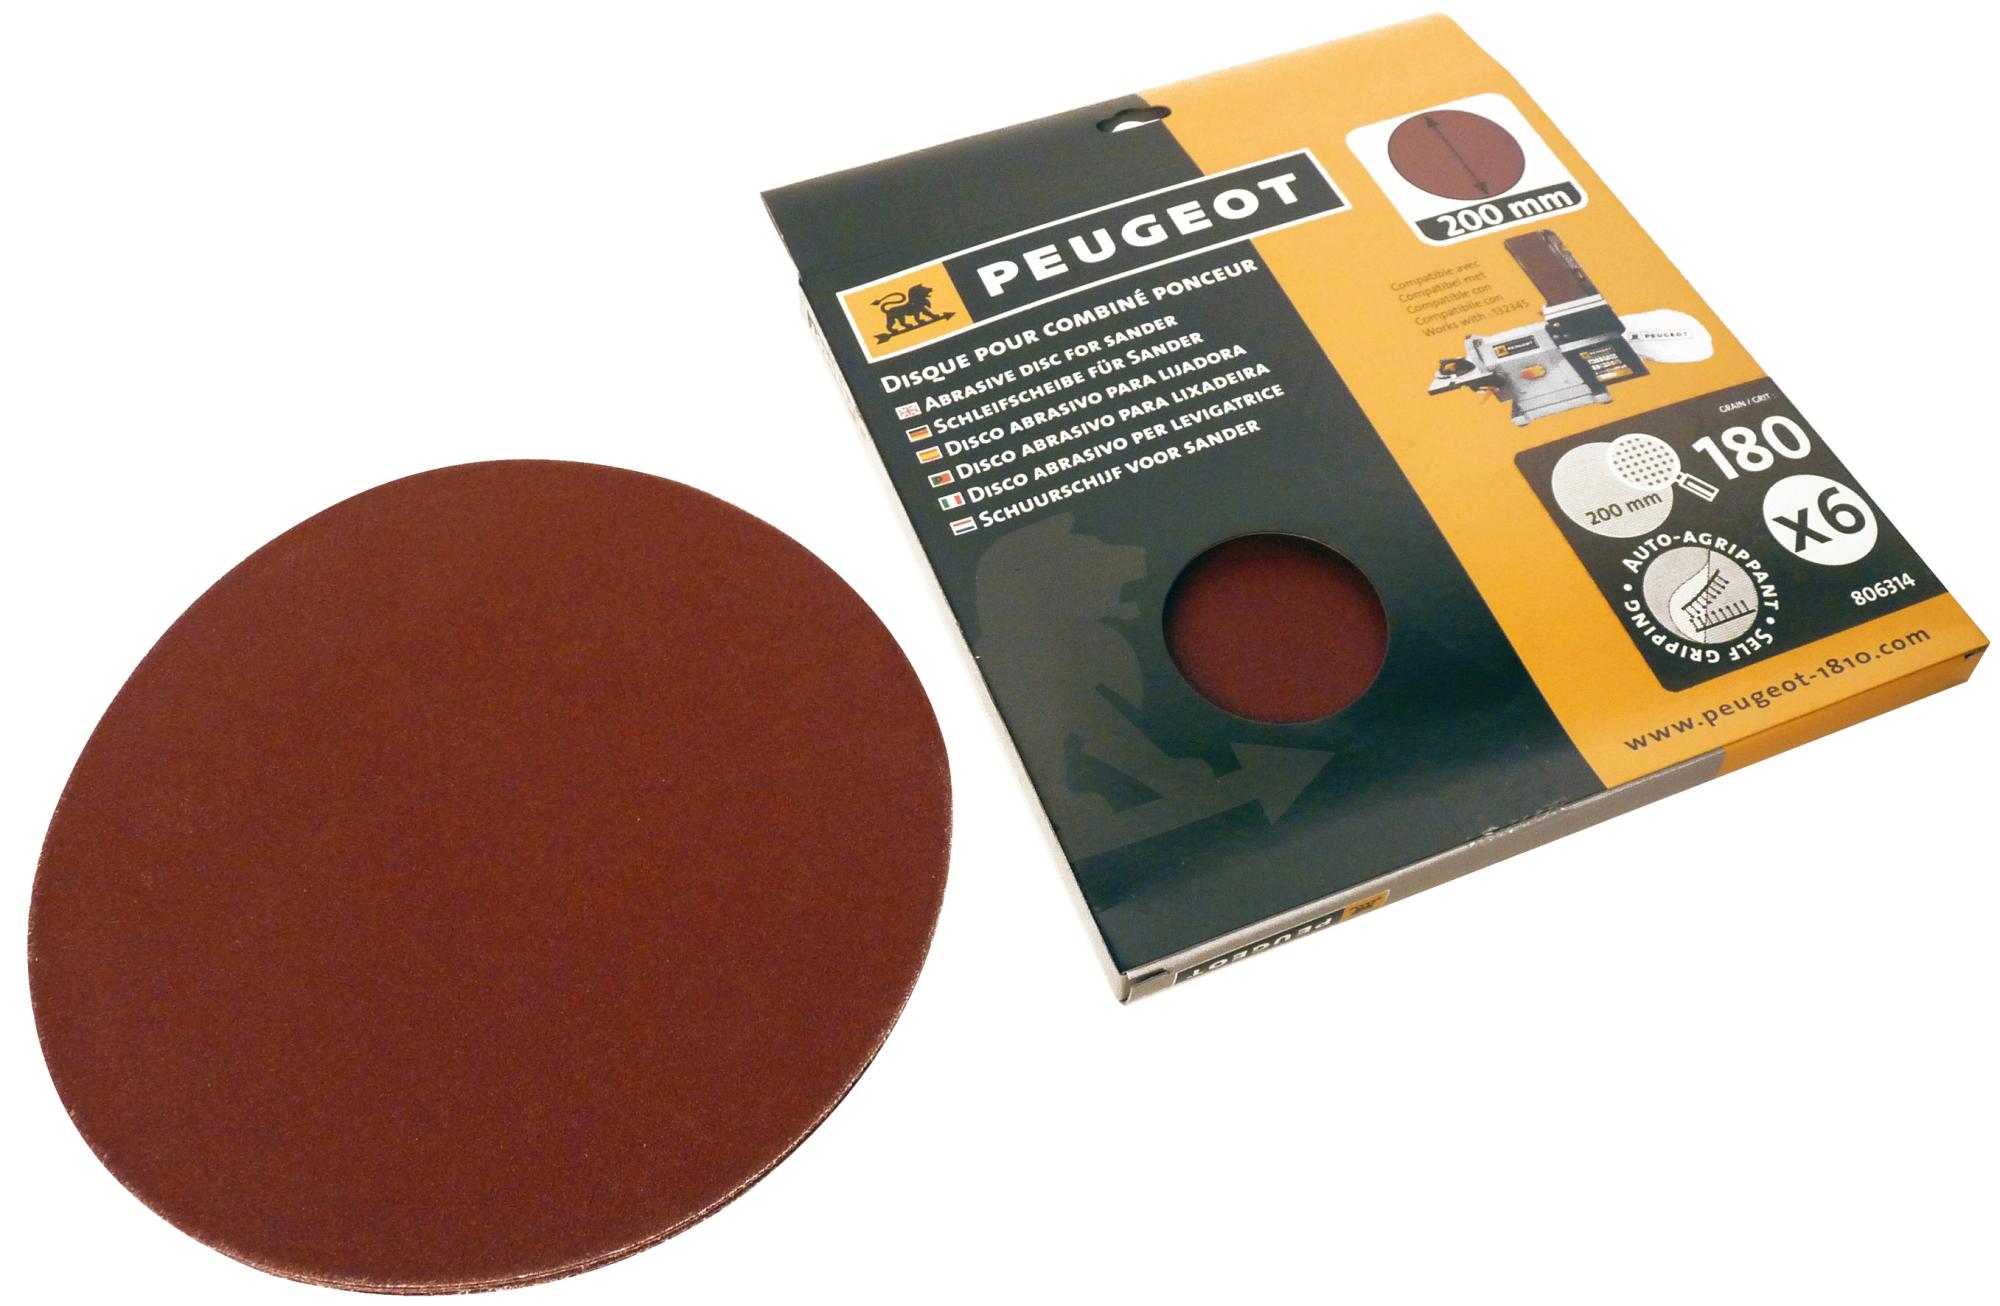 grain P120 8 pouces en zirconium dos adhésif Lot de 5 disques abrasifs P120 200 mm avec adhésif pour étagère PSA 